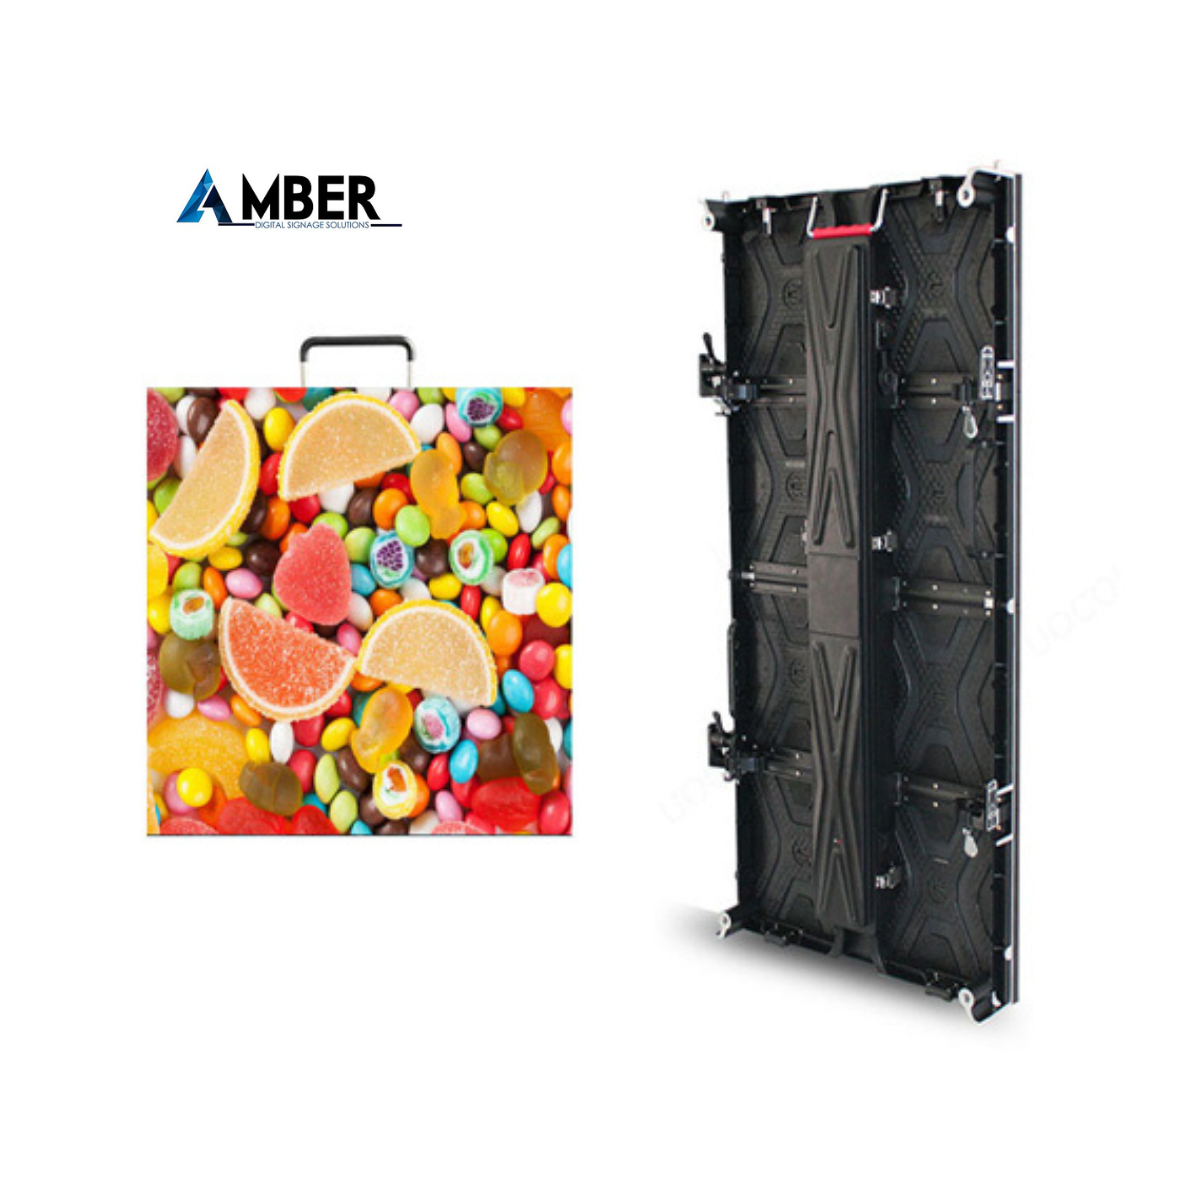 Amber BV-IR-II Indoor LED Wall Rental Series